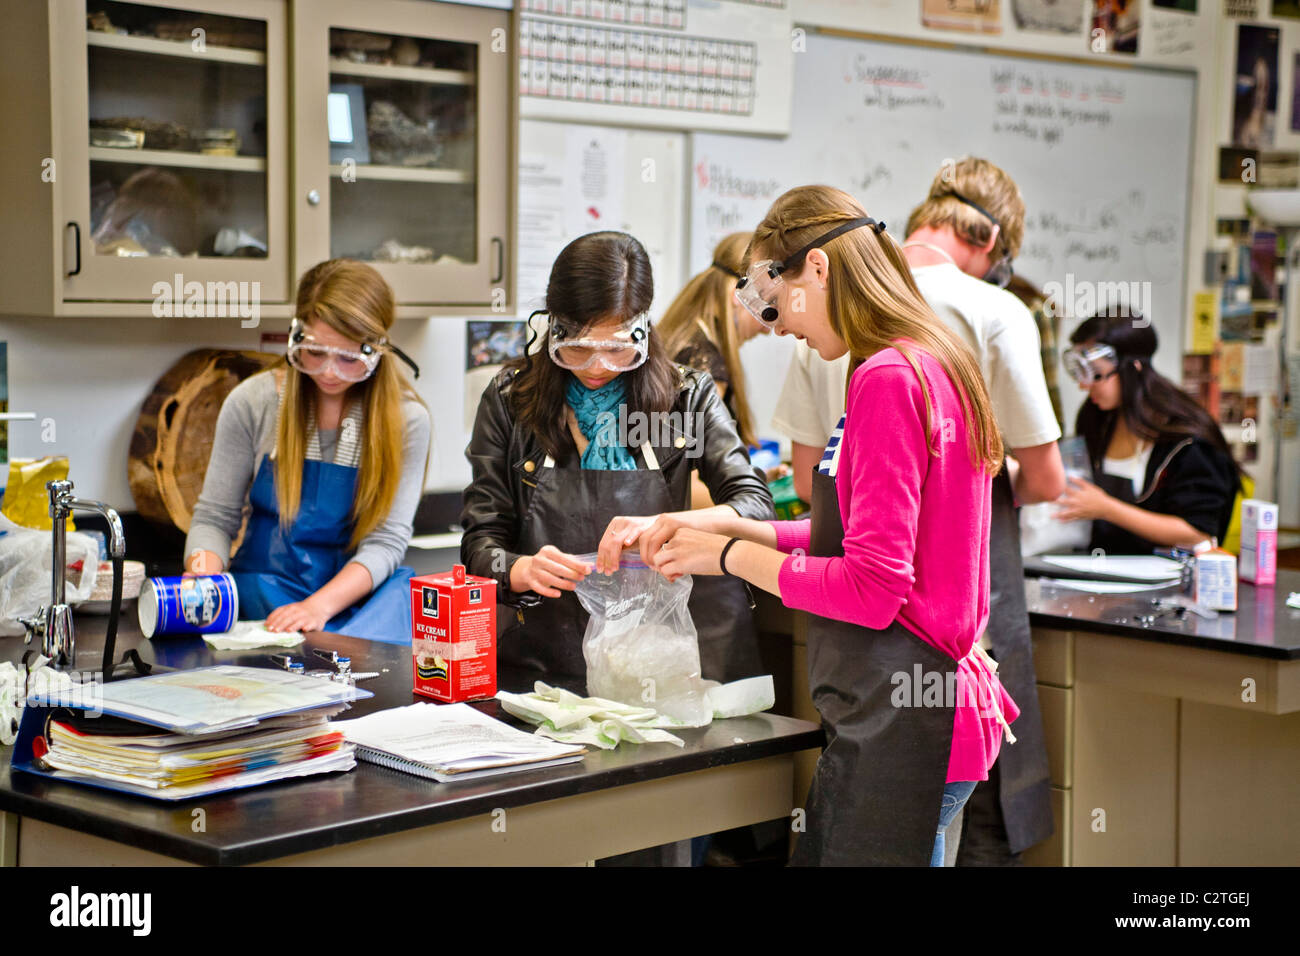 Porter des lunettes de sécurité, les élèves du secondaire à San Clemente, CA, mener une expérience de chimie en solution point de congélation. Banque D'Images